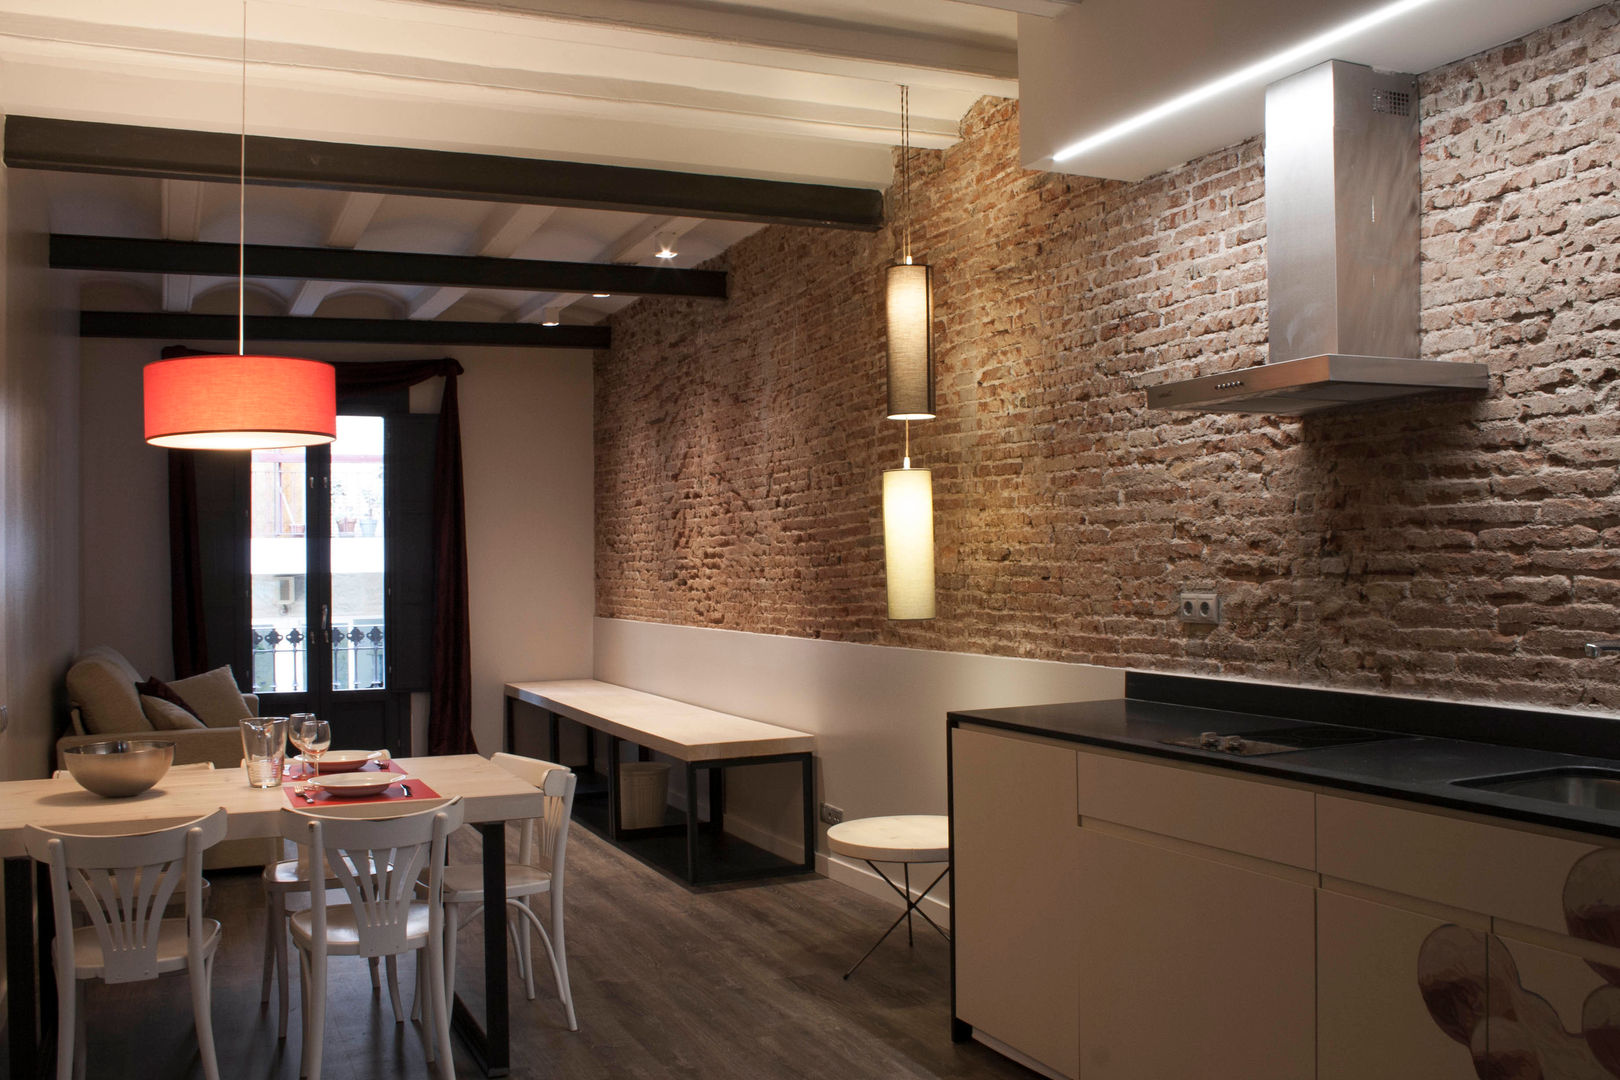 Rehabilitación edificio de viviendas en Barcelona, Lavolta Lavolta Espaços comerciais Hotéis